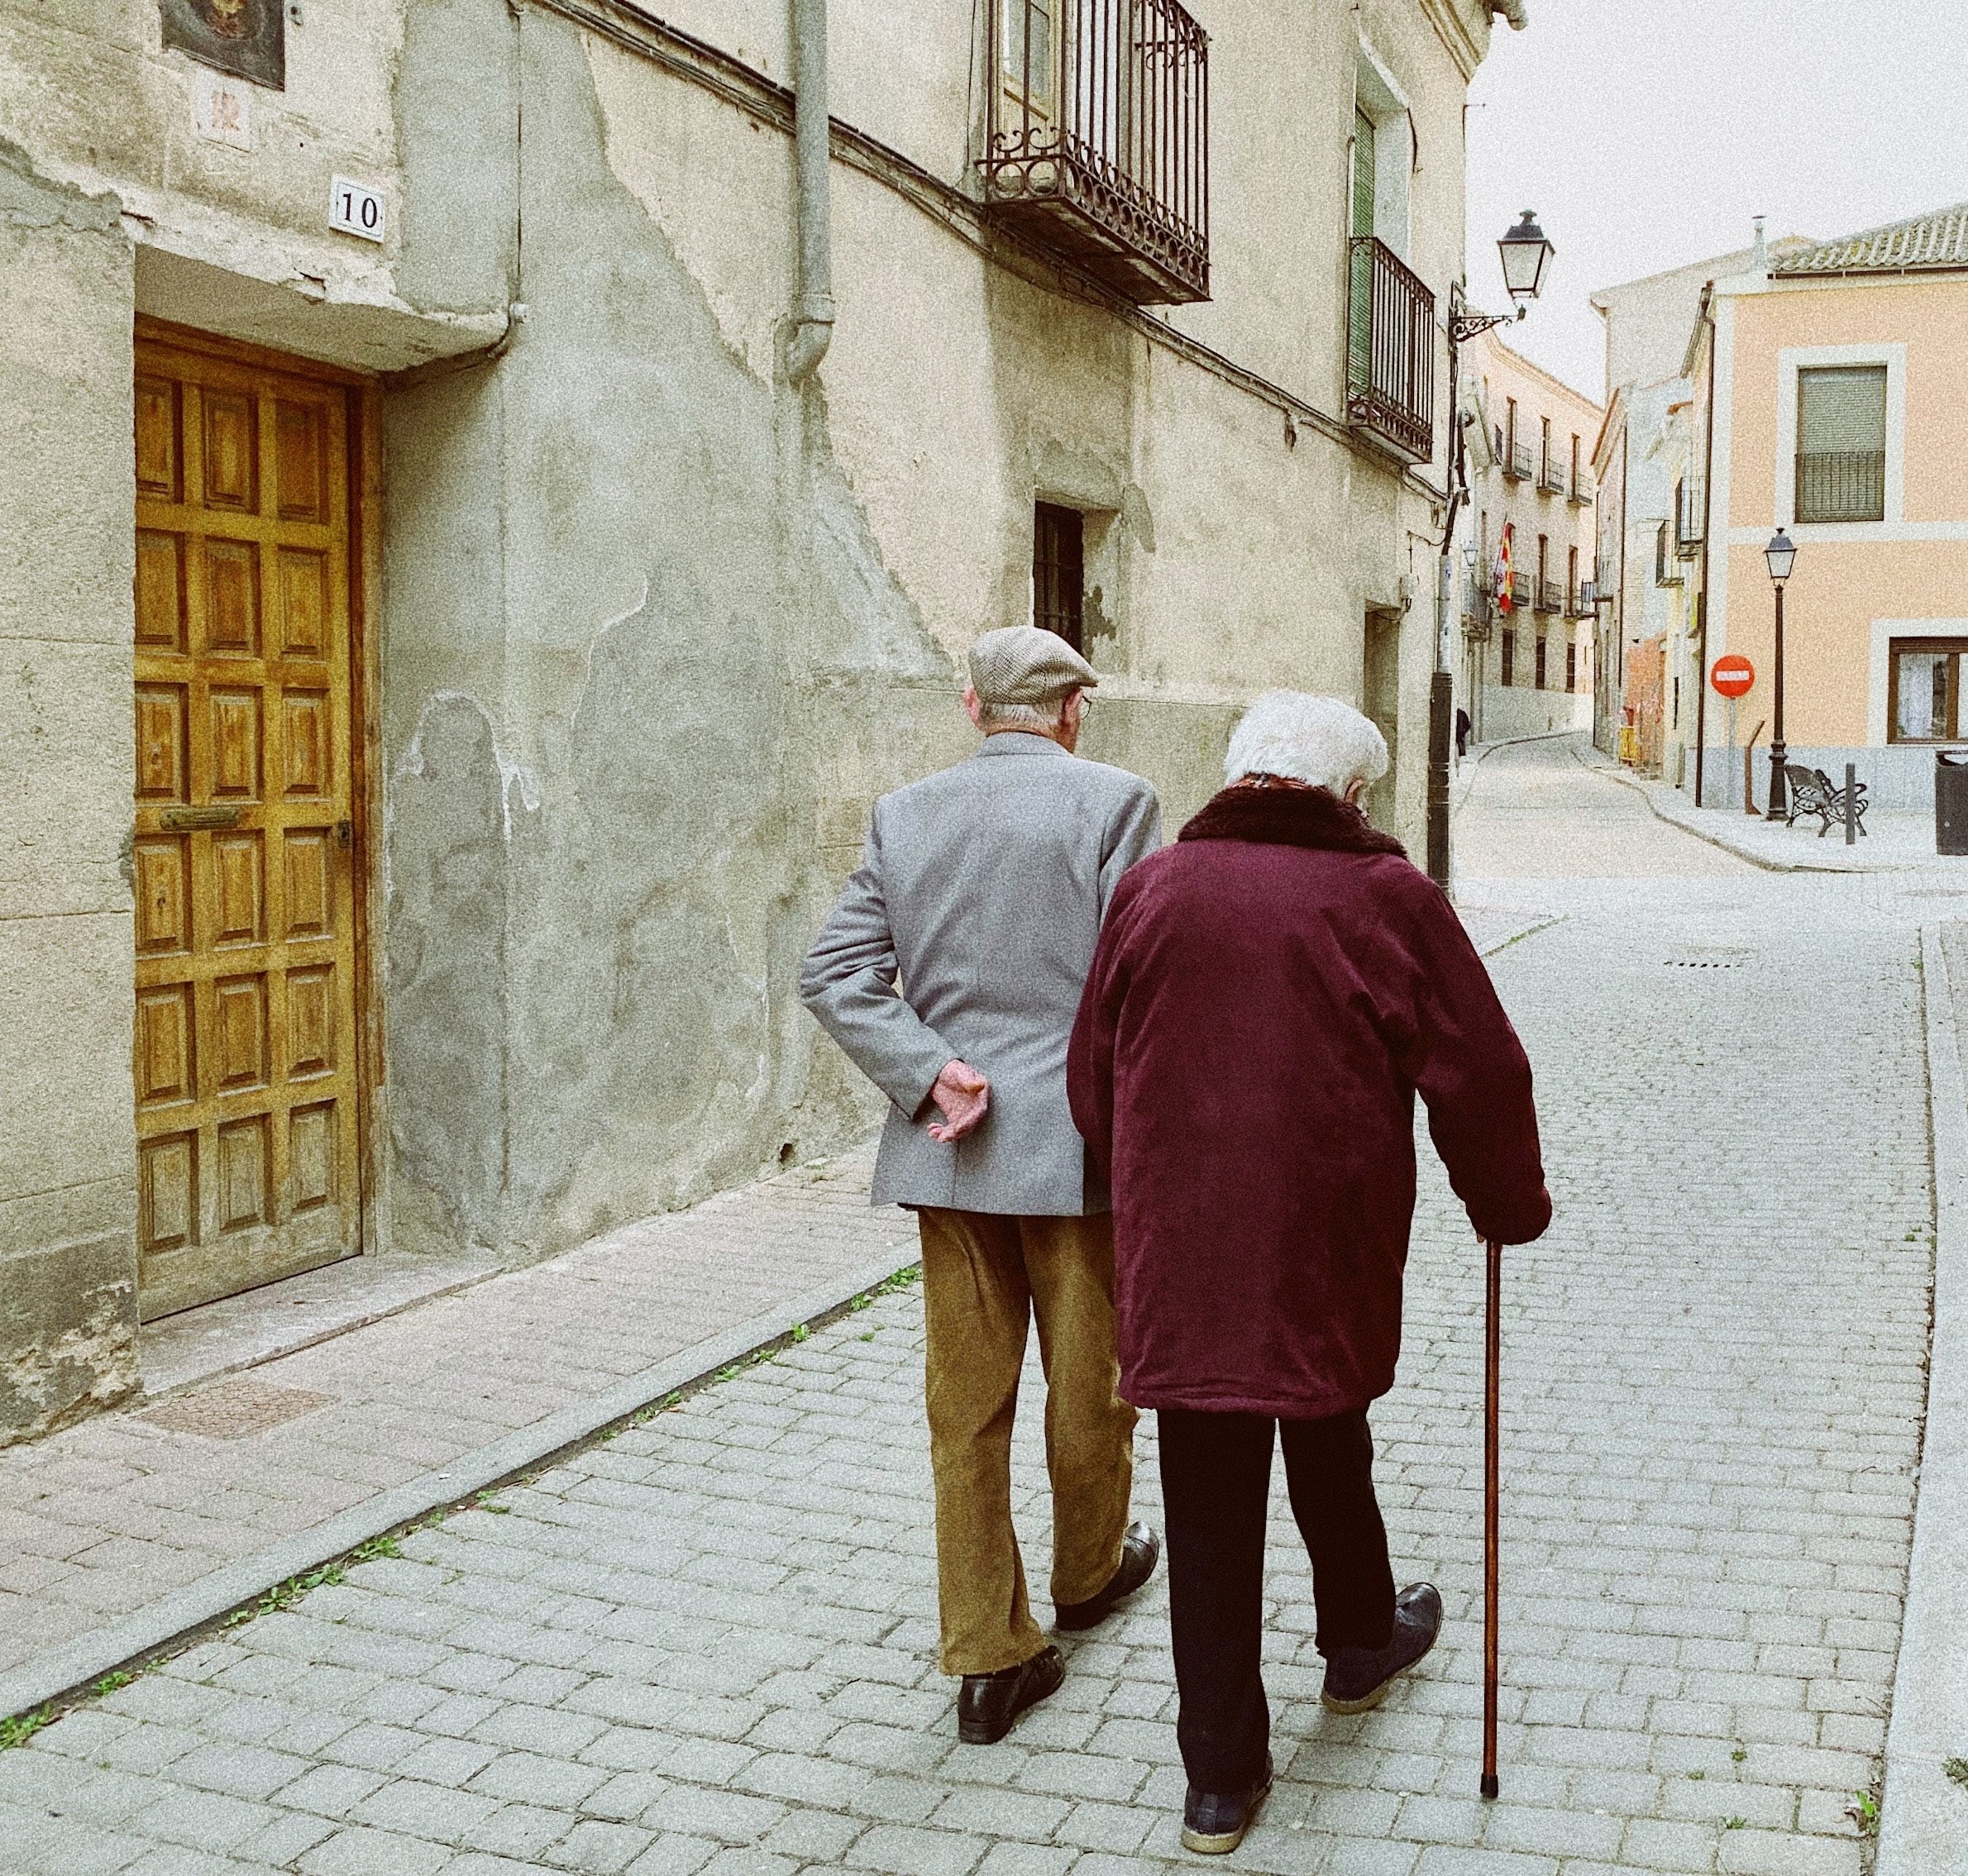 Agir sobre o envelhecimento – ponto de partida: sentir apreensão